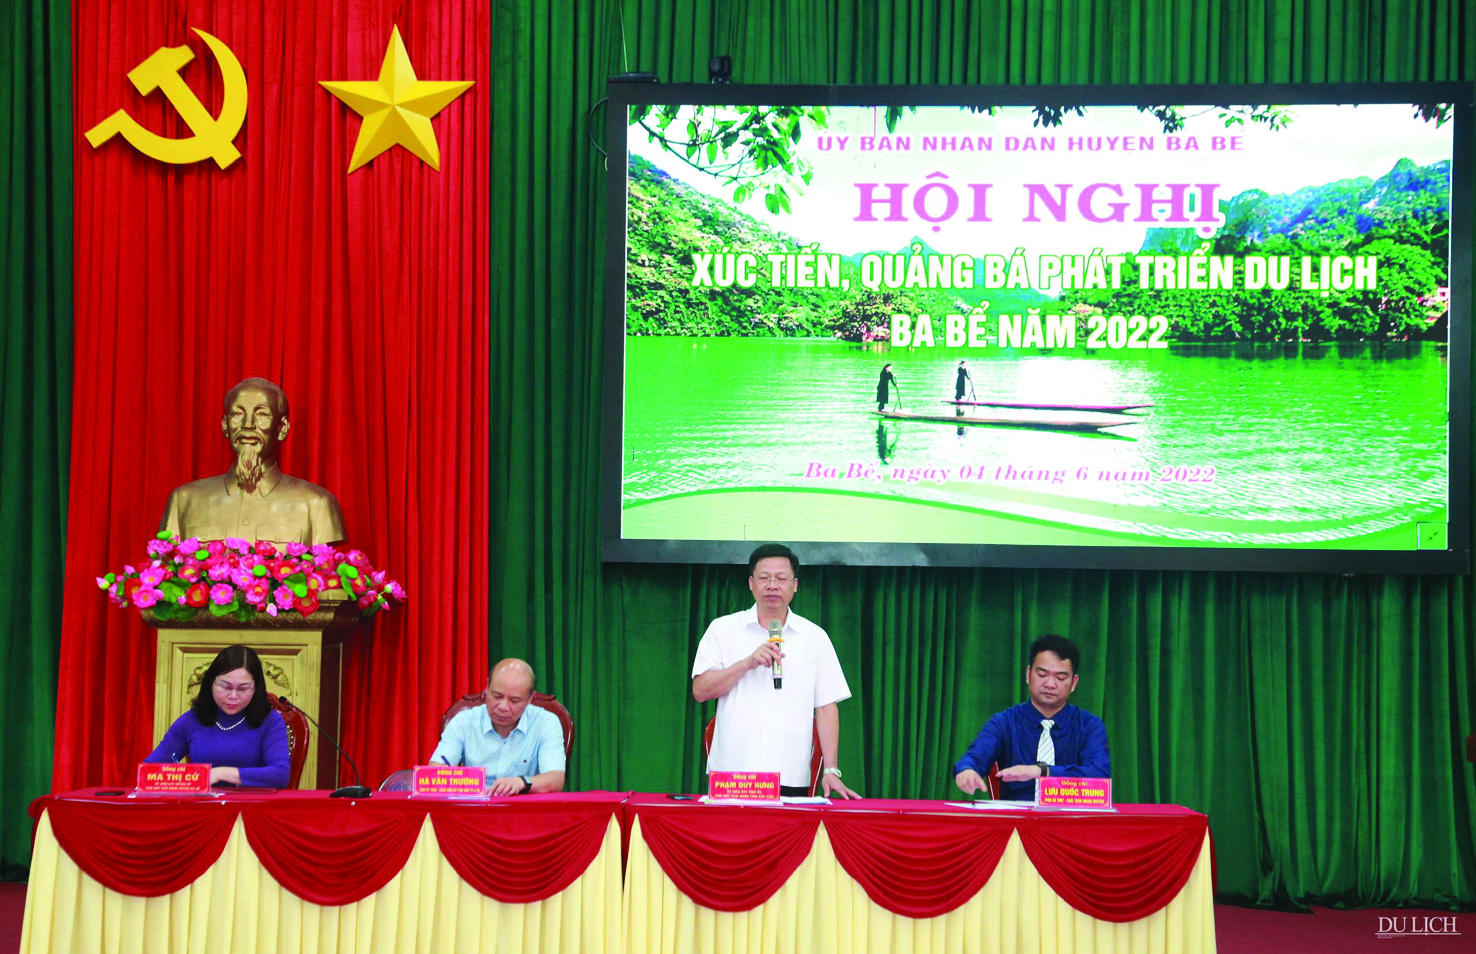  Phó Chủ tịch tỉnh Bắc Kạn Phạm Duy Hưng phát biểu tại Hội nghị Xúc tiến, quảng bá phát triển du lịch Ba Bể